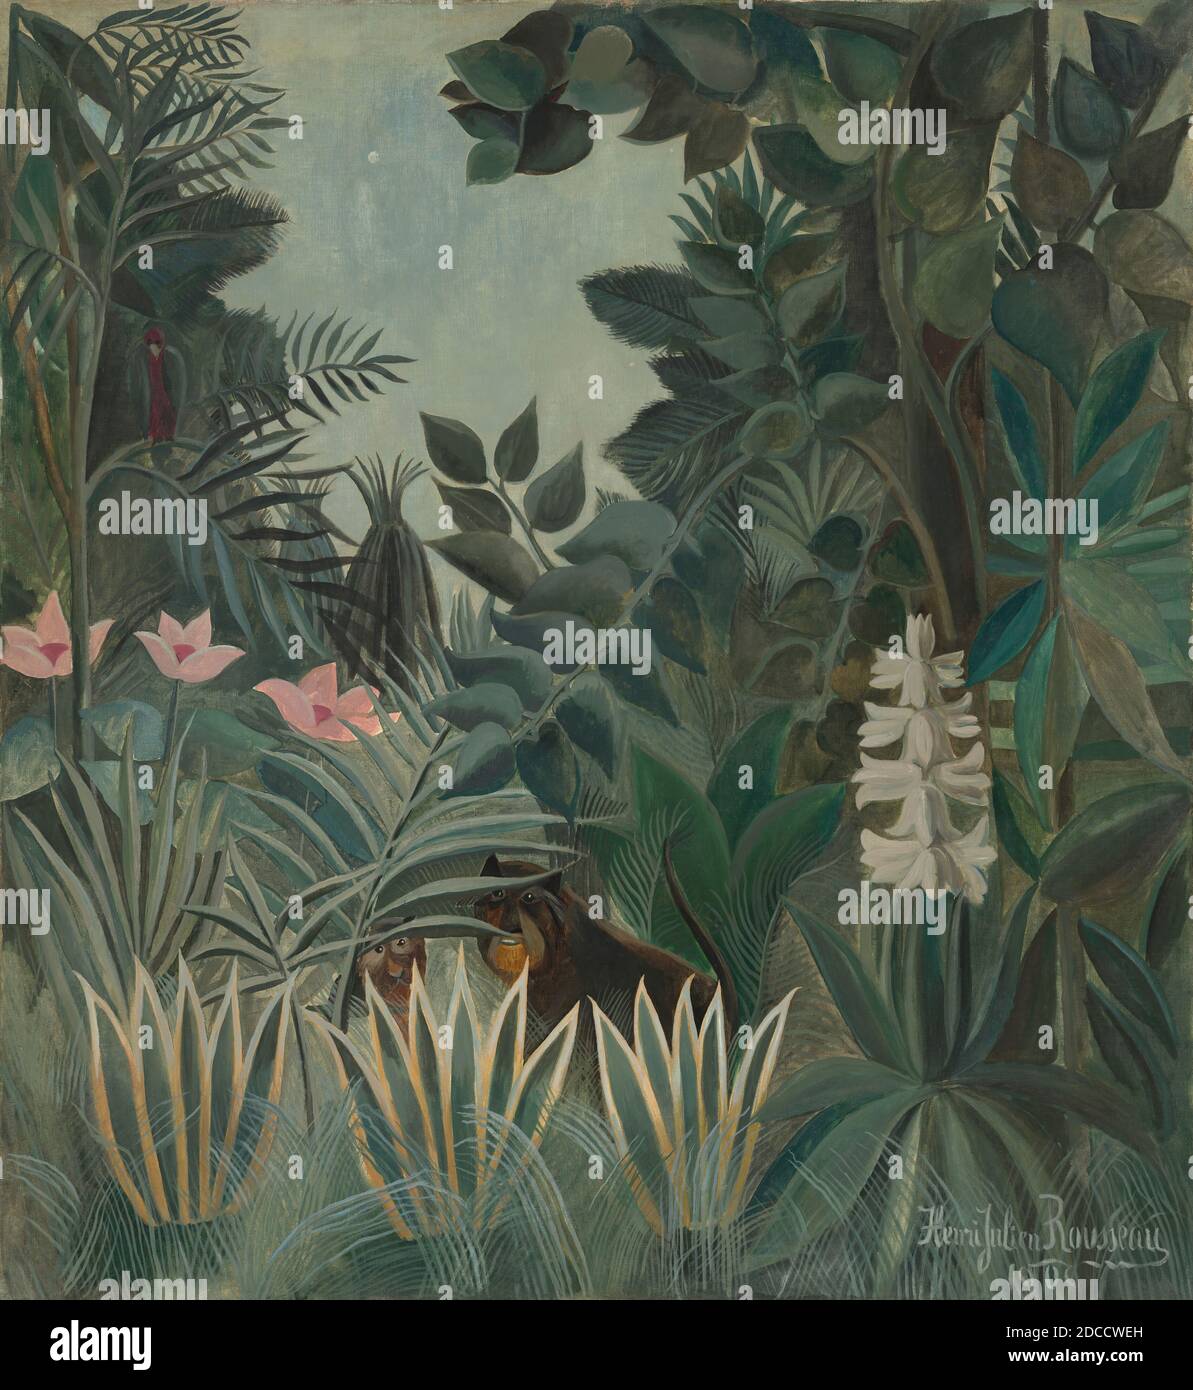 Henri Rousseau, (artiste), Français, 1844 - 1910, la Jungle équatoriale, 1909, huile sur toile, total: 140.6 x 129.5 cm (55 3/8 x 51 po), encadré: 151.8 x 141.3 x 6.9 cm (59 3/4 x 55 5/8 x 2 11/16 po Banque D'Images